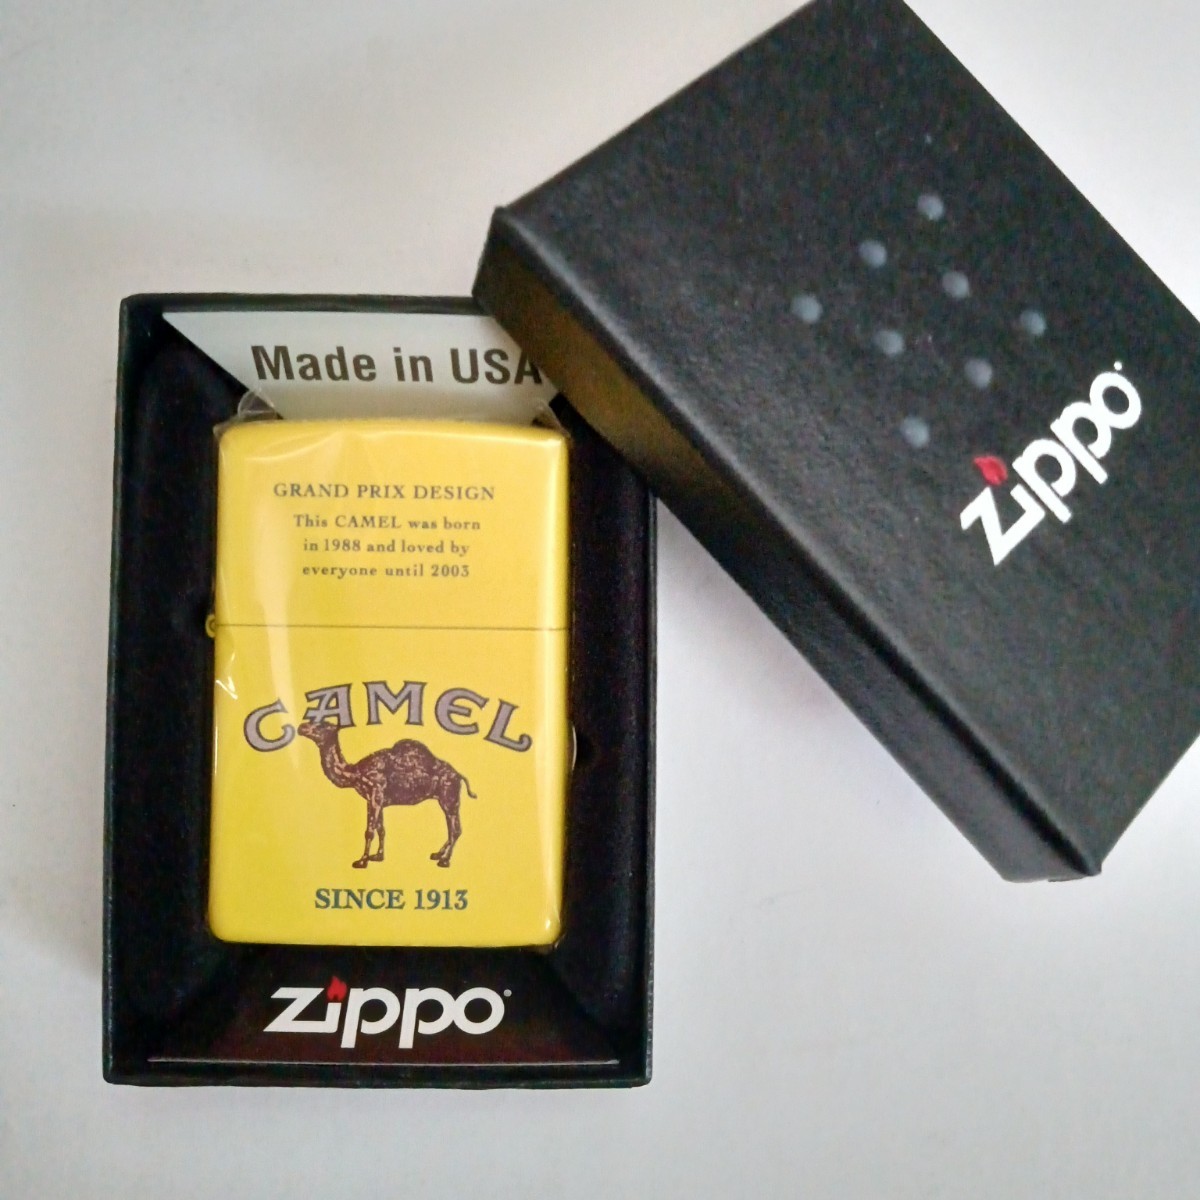 Yahoo!オークション -「zippo camel」(オイルライター) (一般)の落札